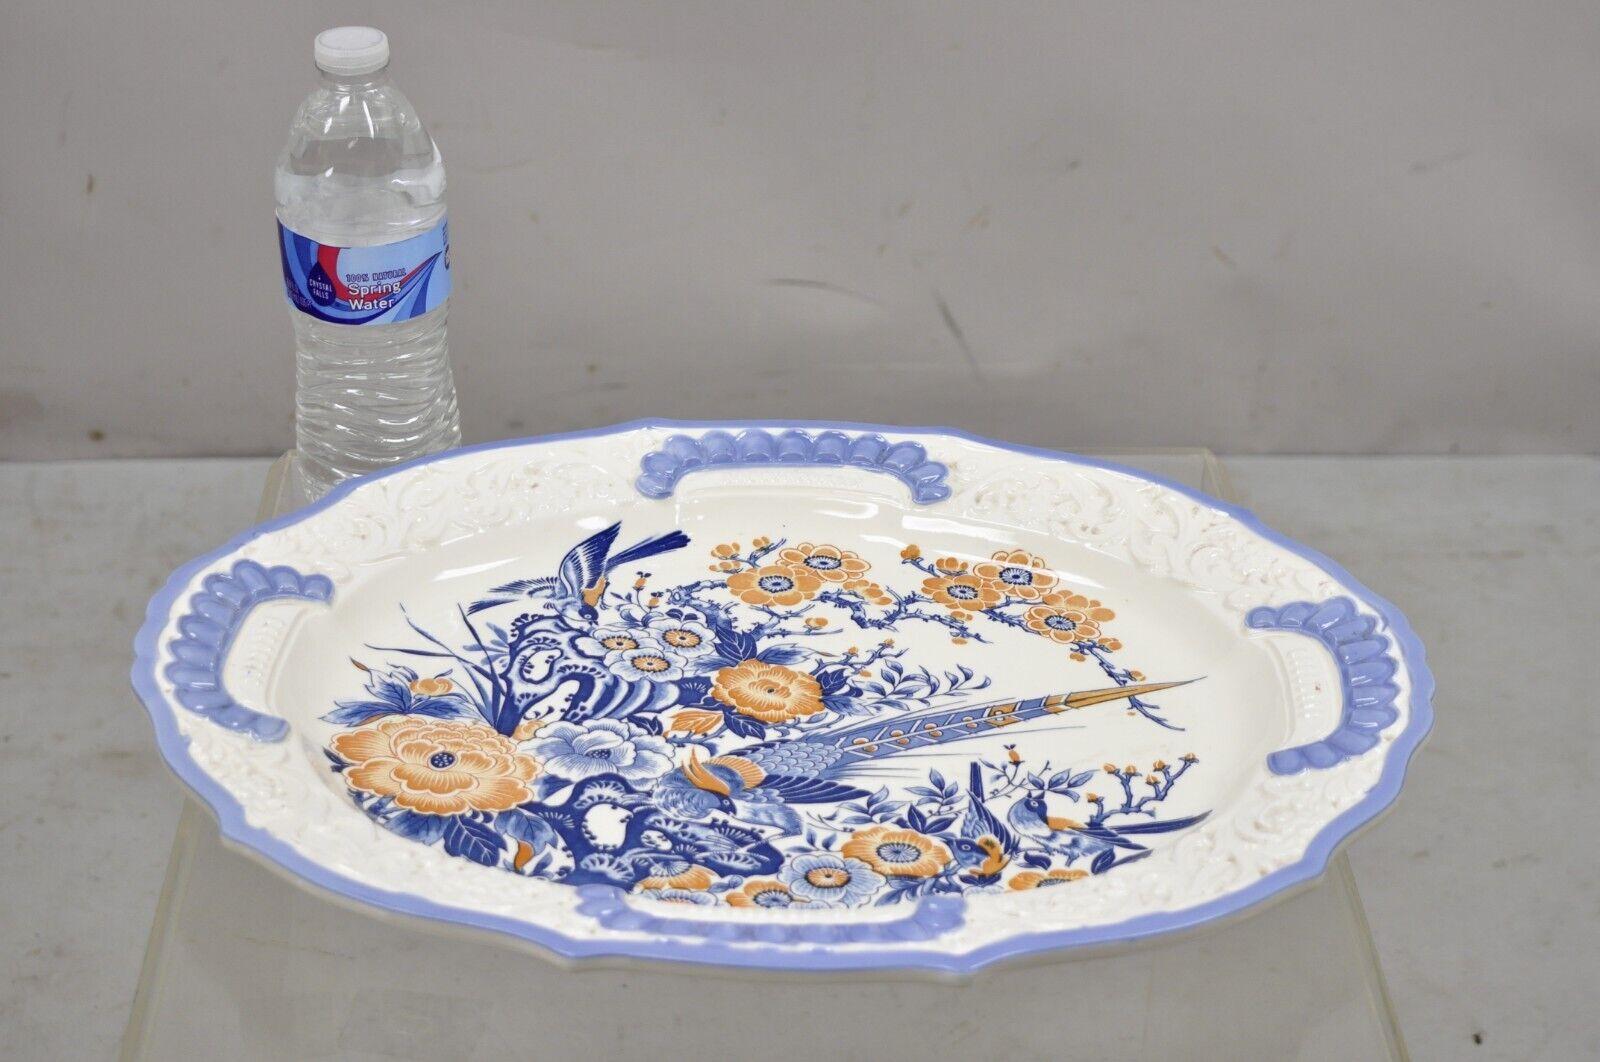 Chikusa Yokkaichi Japan Blue White Ceramic Chinese Bird Platter Dish Plate 4